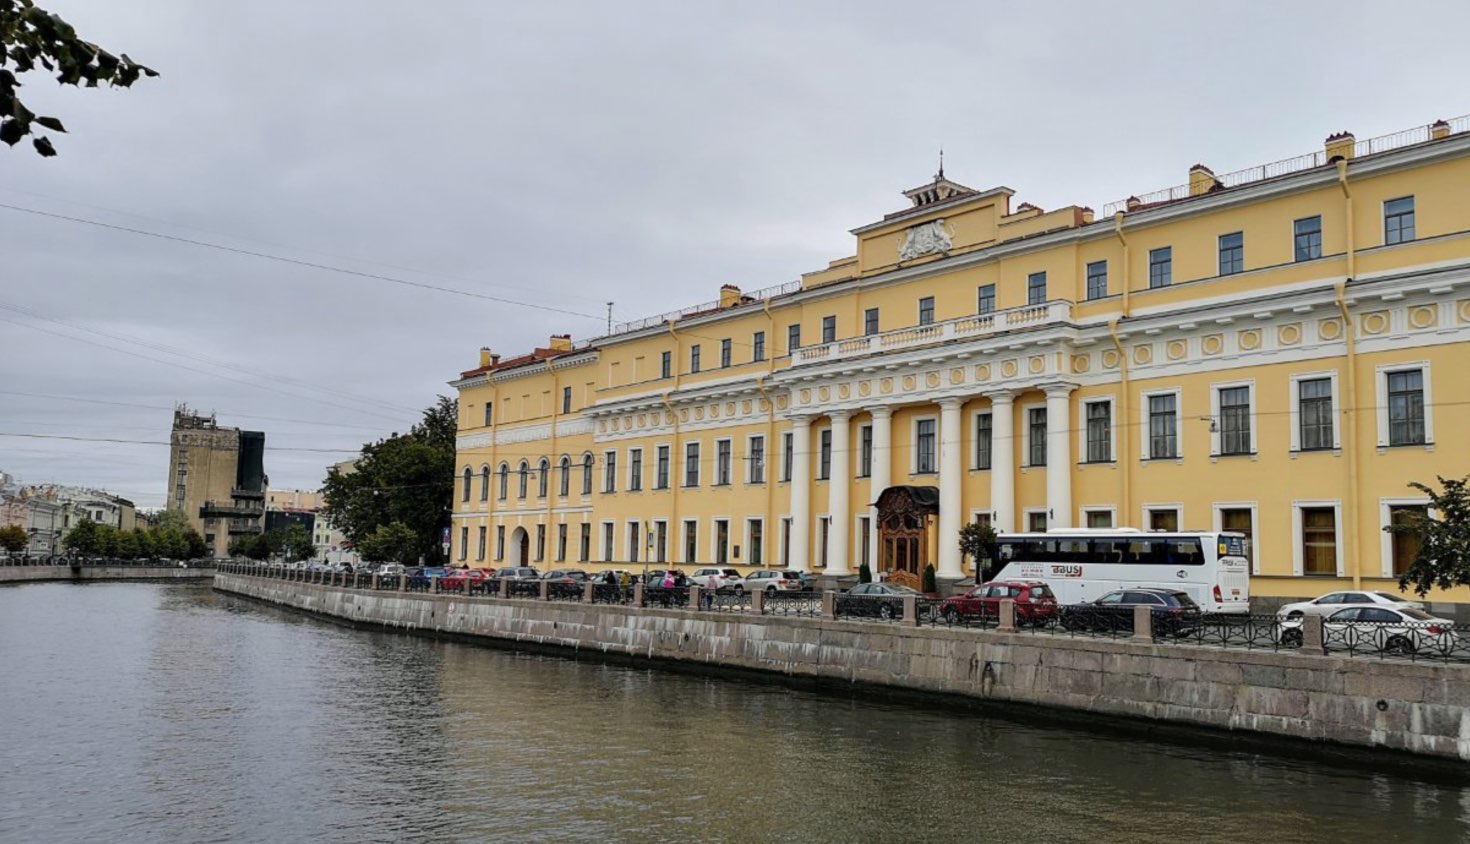 Greifen Sie auf Yusupov Palace - Moika 94 - St. Petersburg zu